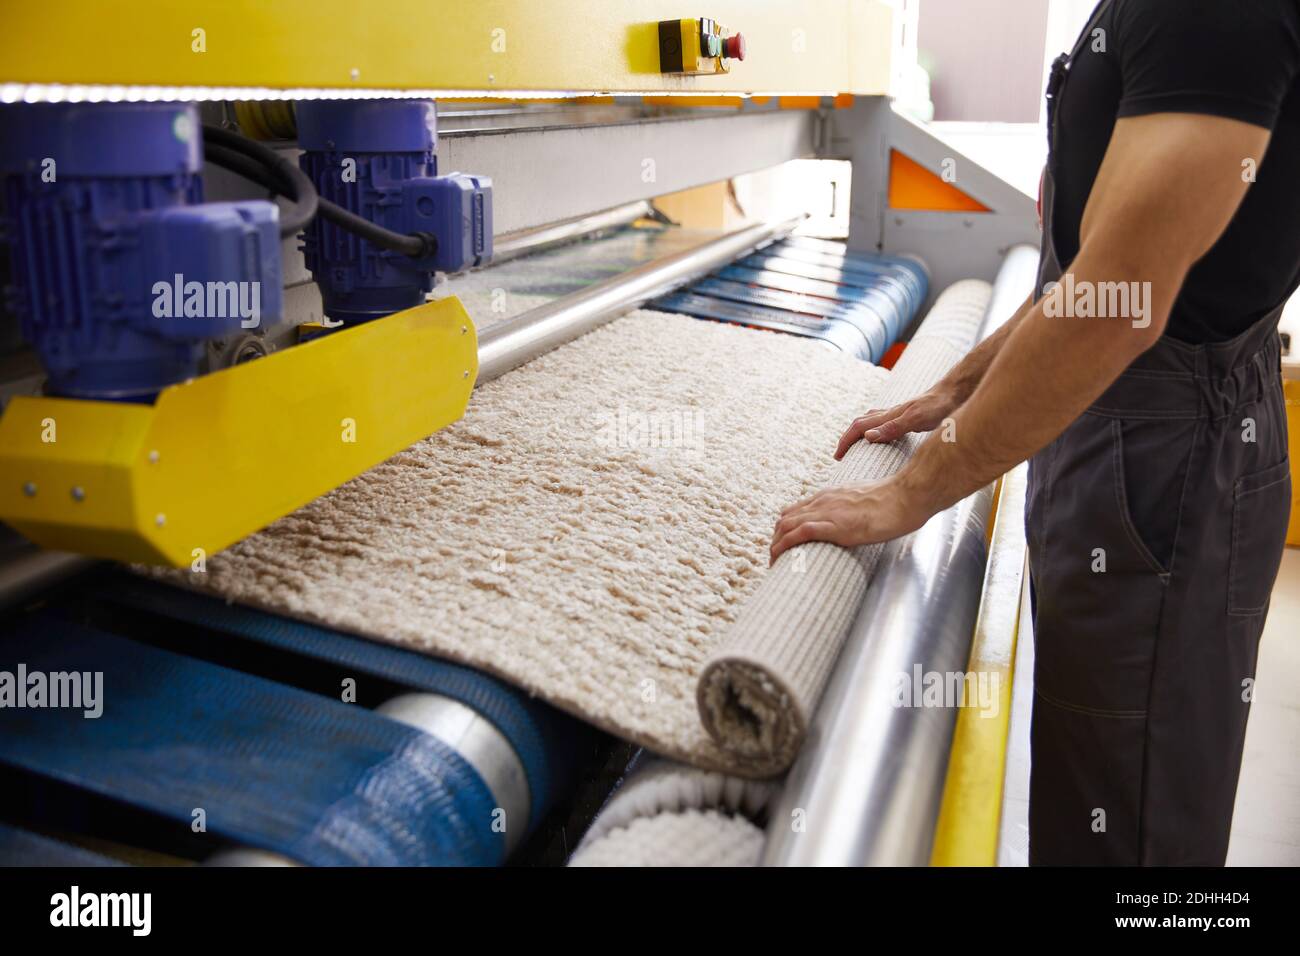 Männlicher Arbeiter Reinigung Teppich auf automatische Waschmaschine  Ausrüstung und Trockner im Waschraum. Professioneller Waschservice  Stockfotografie - Alamy